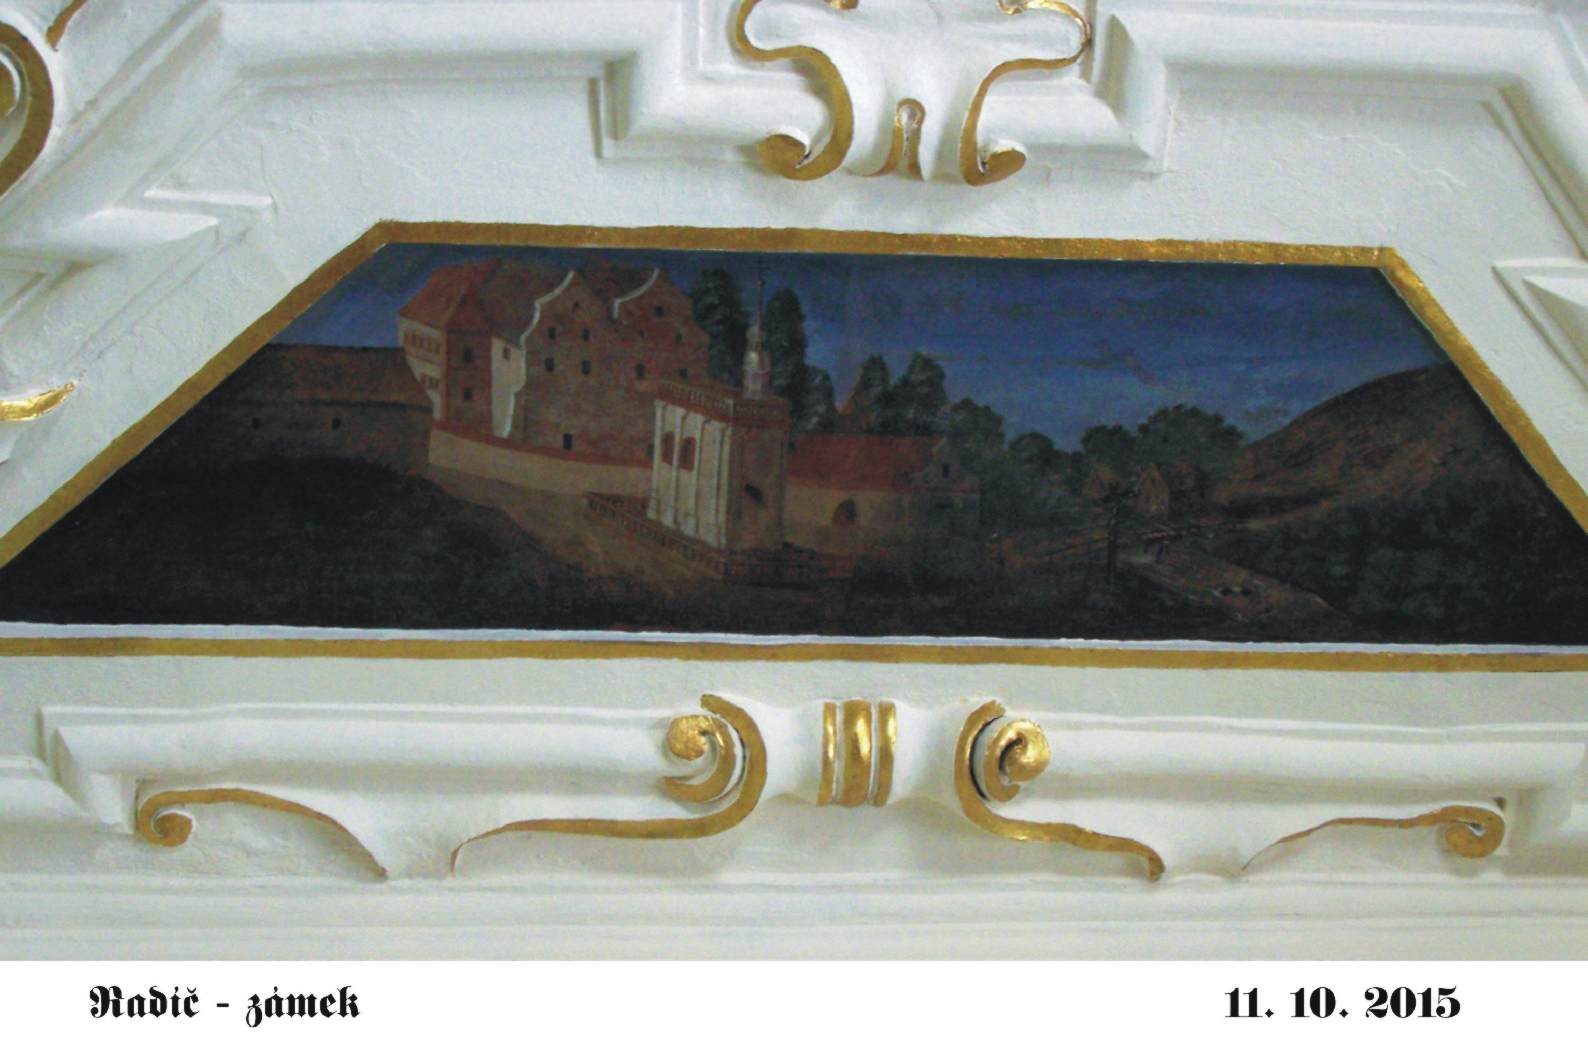 Radíč - renesanční vyobrazení zámku